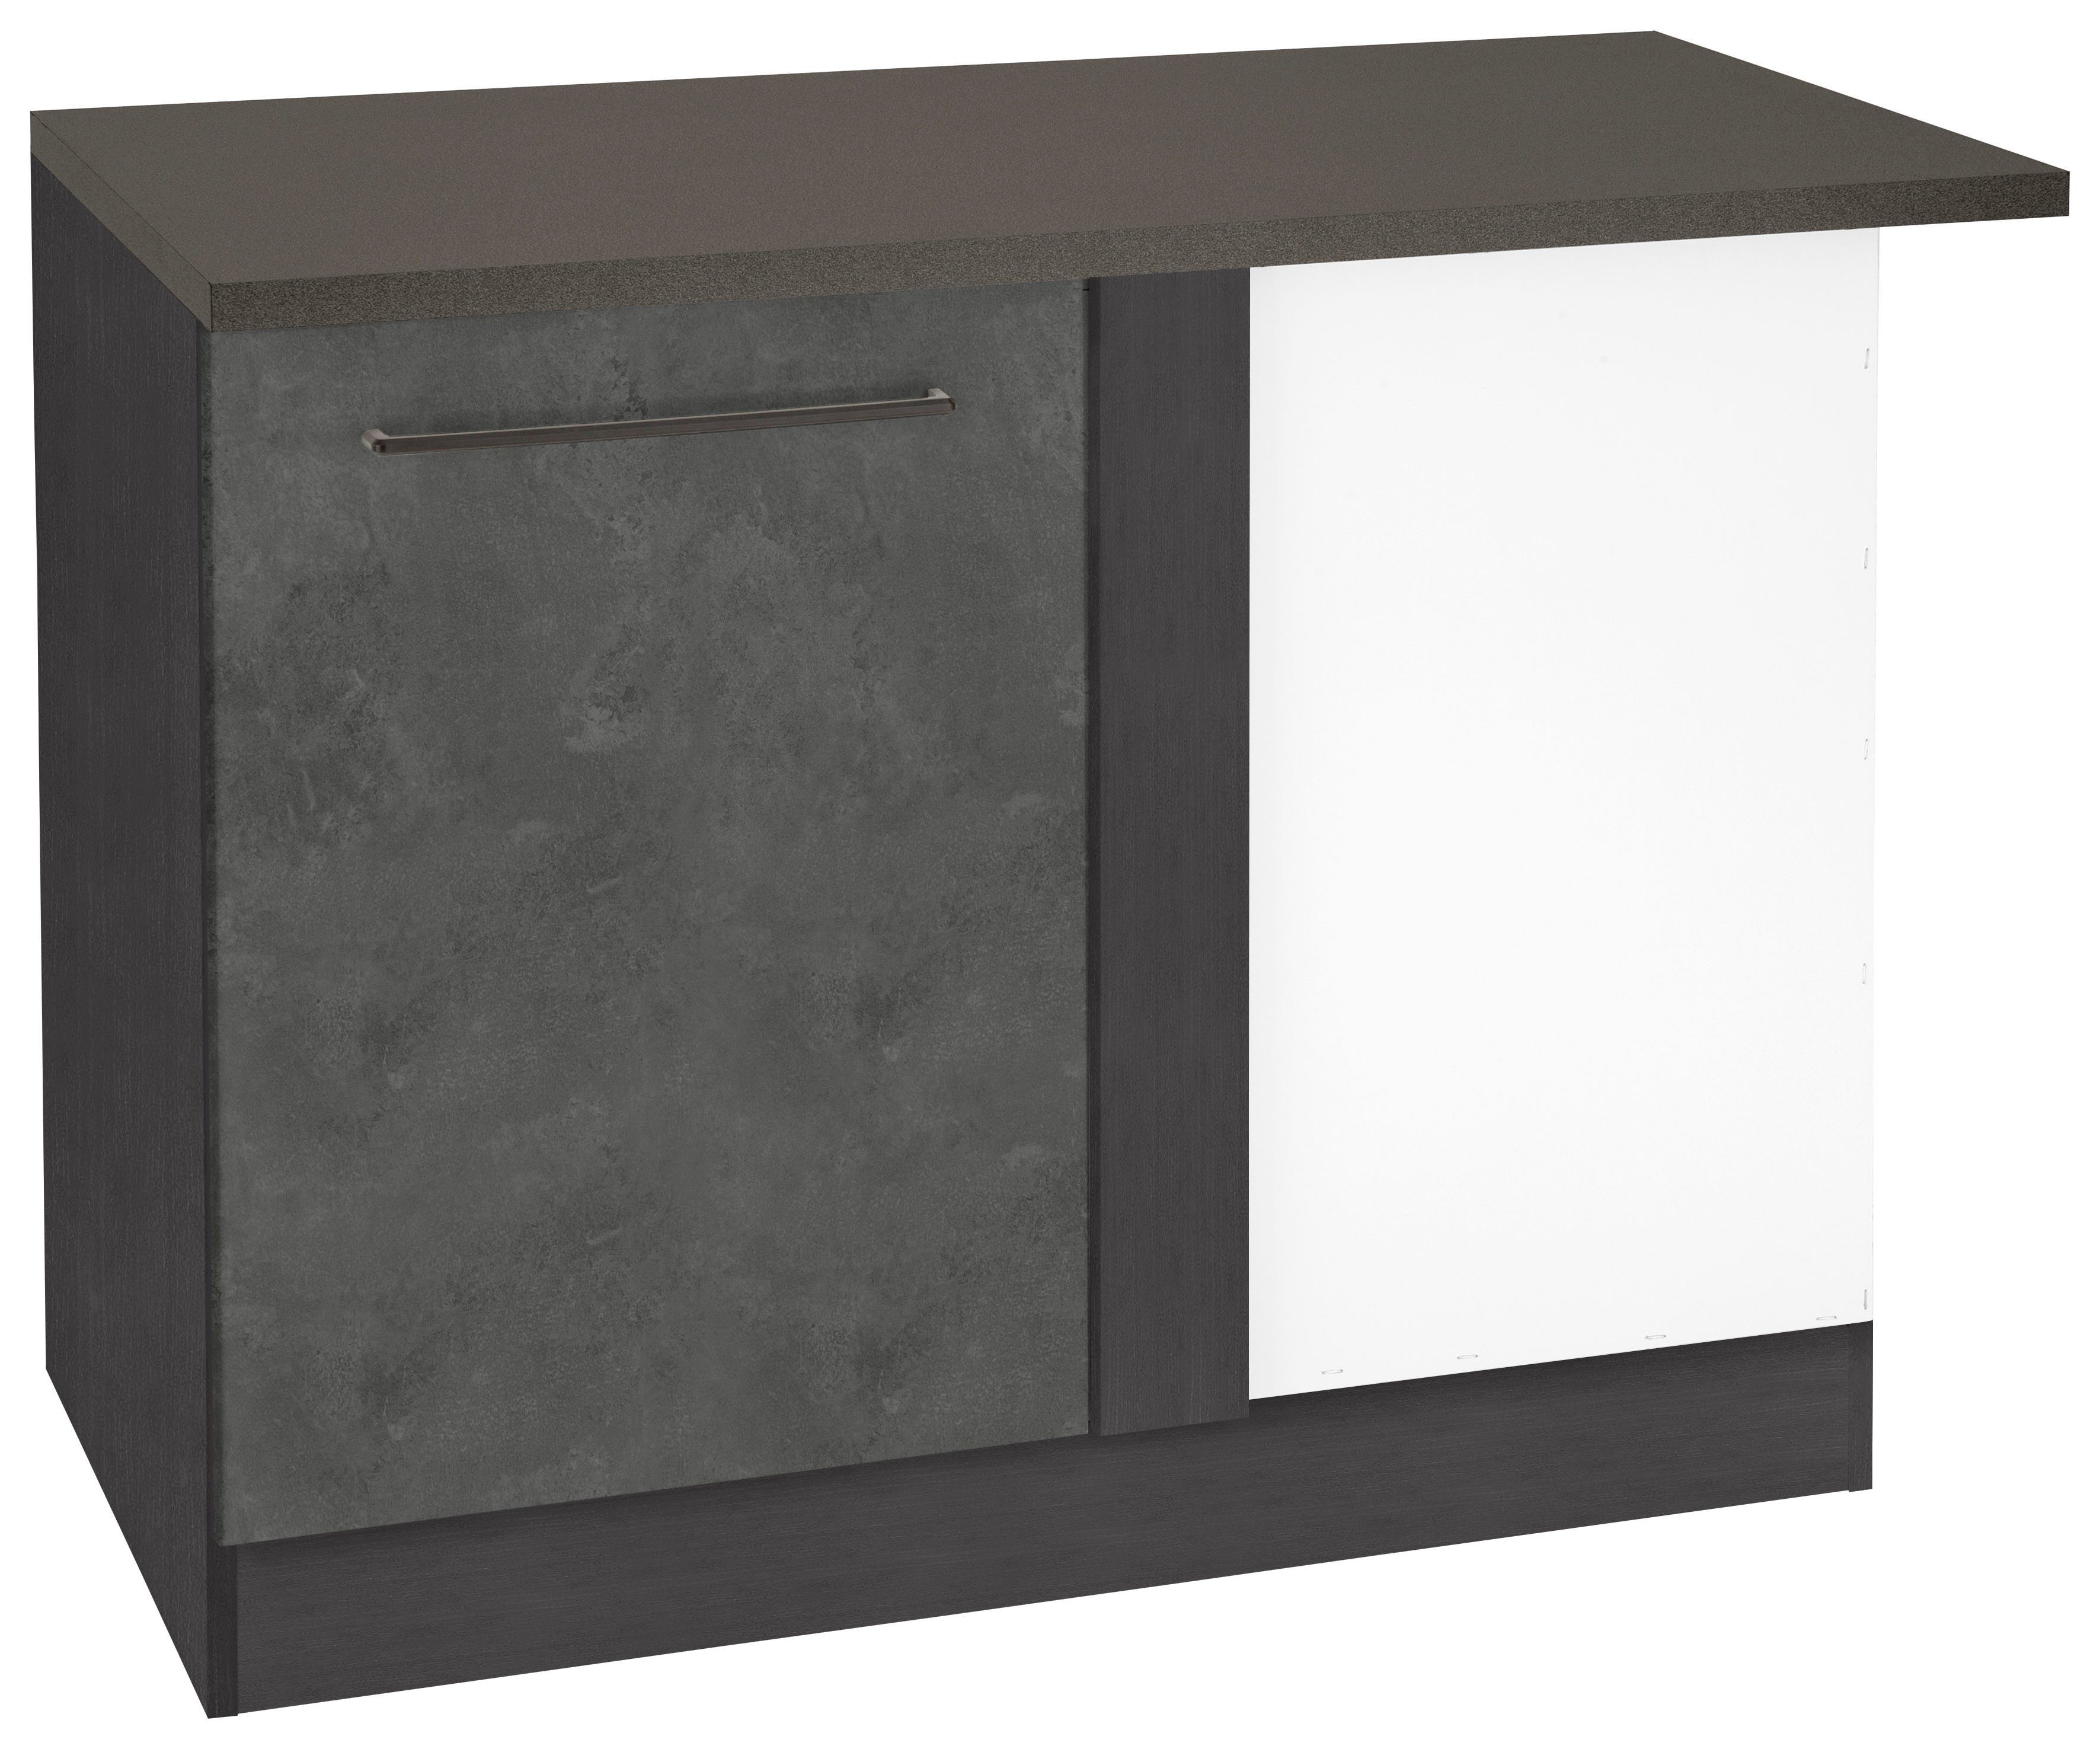 MDF 110 cm betonfarben Front HELD Eckunterschrank hochwertige | MÖBEL grafit dunkel schwarzer Metallgriff, breit, Tulsa Tür, 1